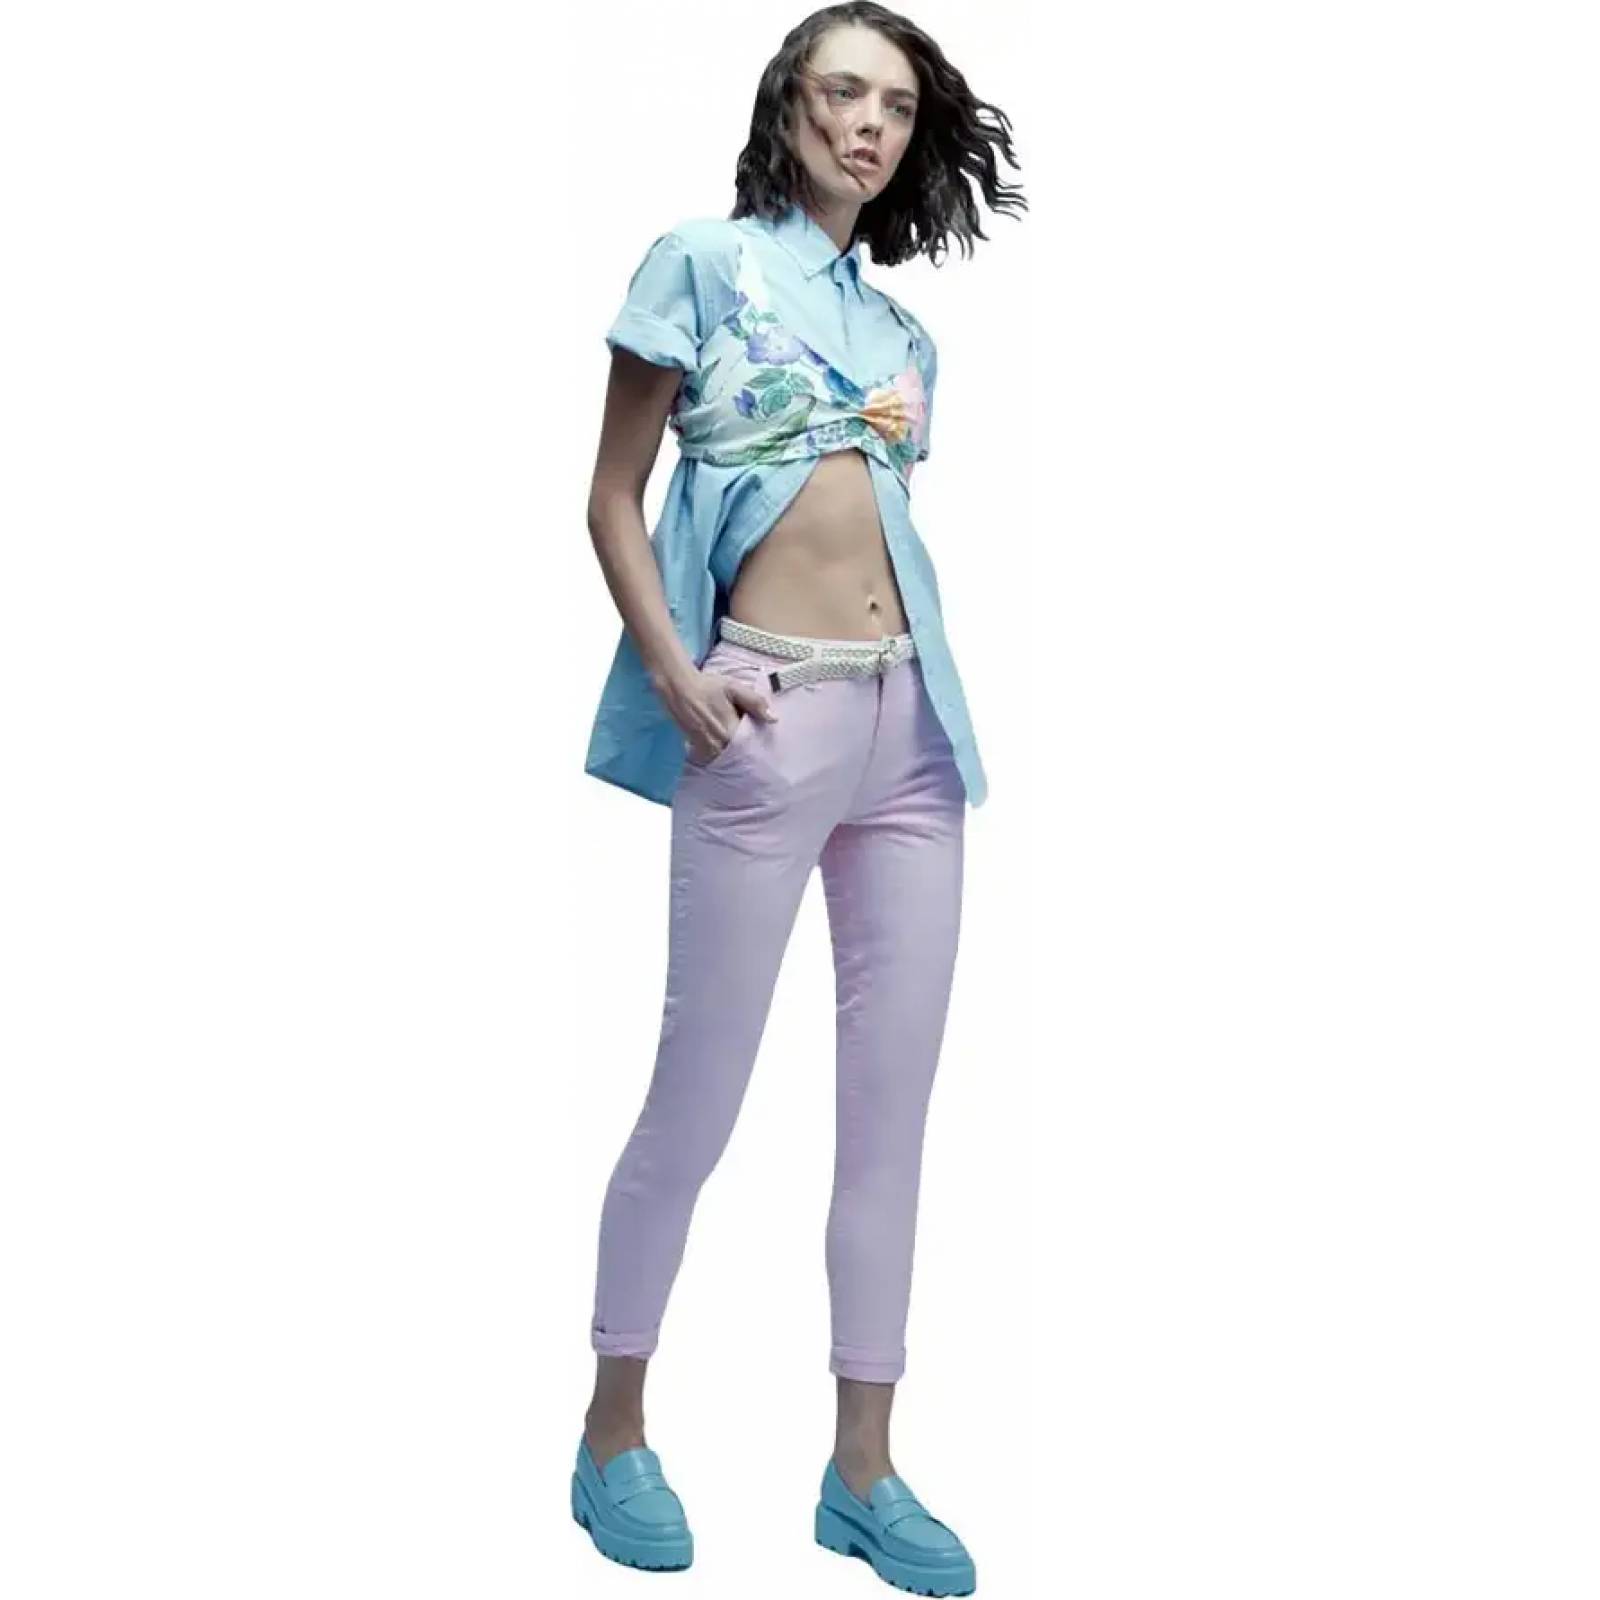 Pantalon casual dama azul marino Holly Land modelo 2187 – Conceptos